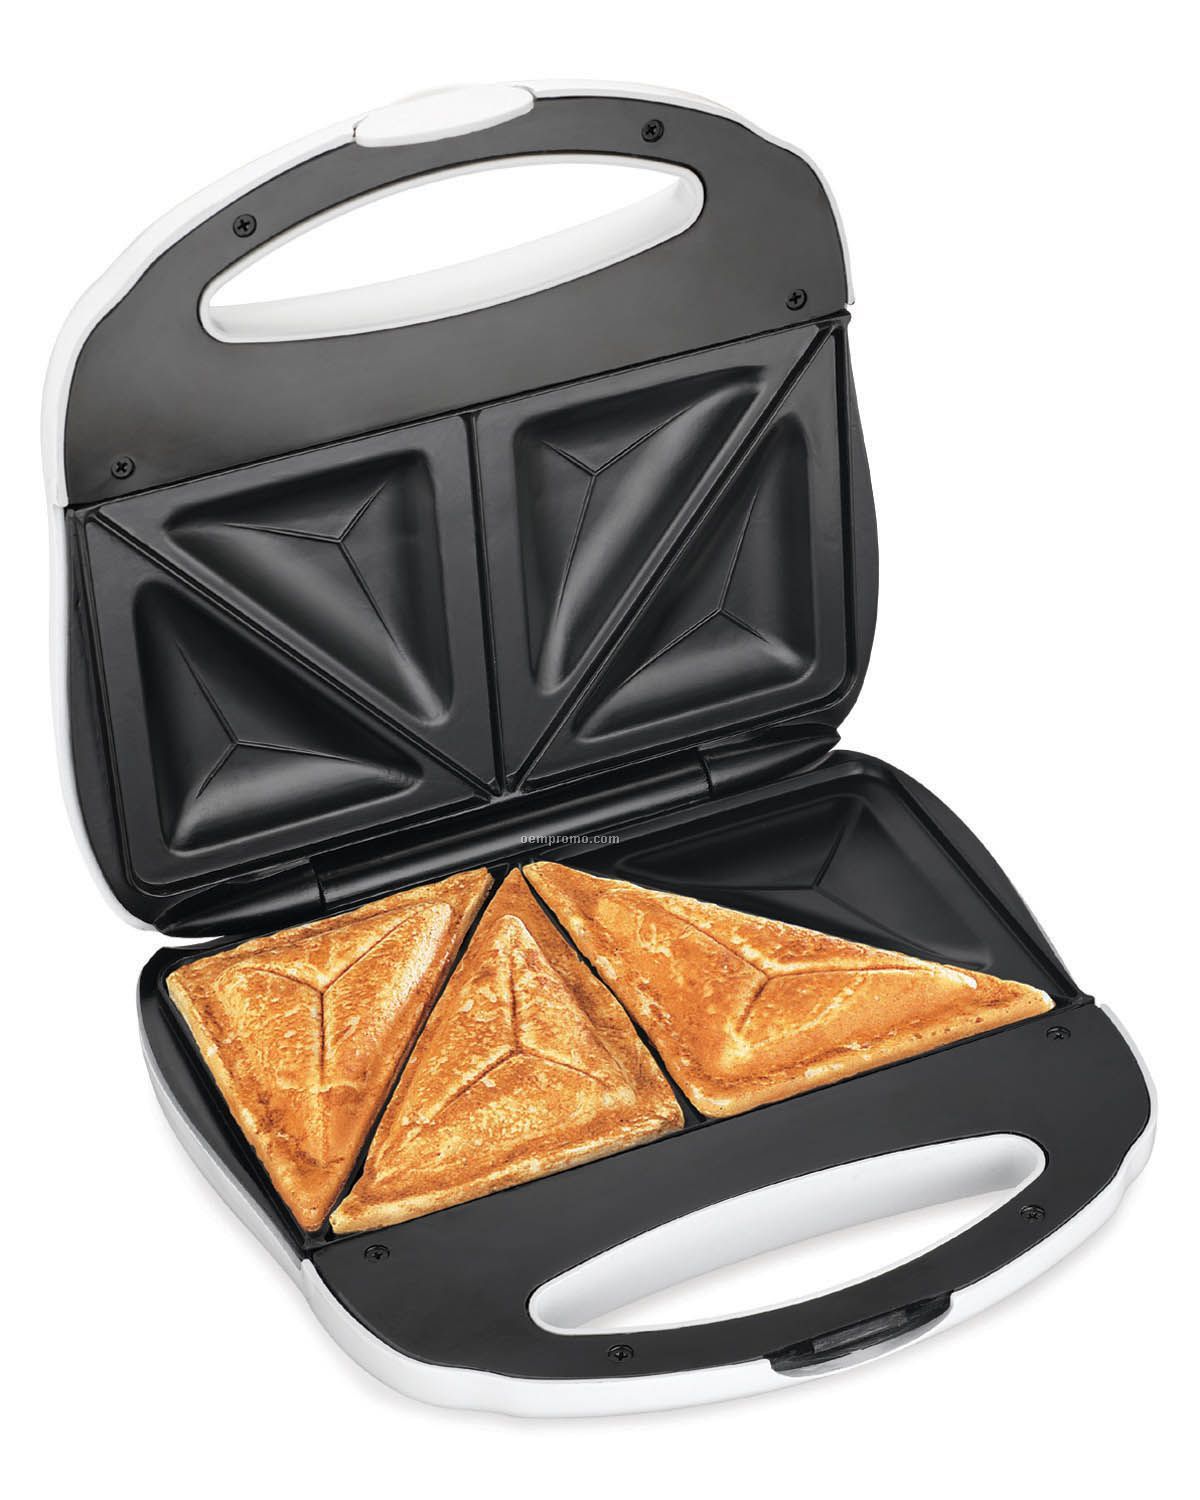 Proctor Silex Sandwich Toaster